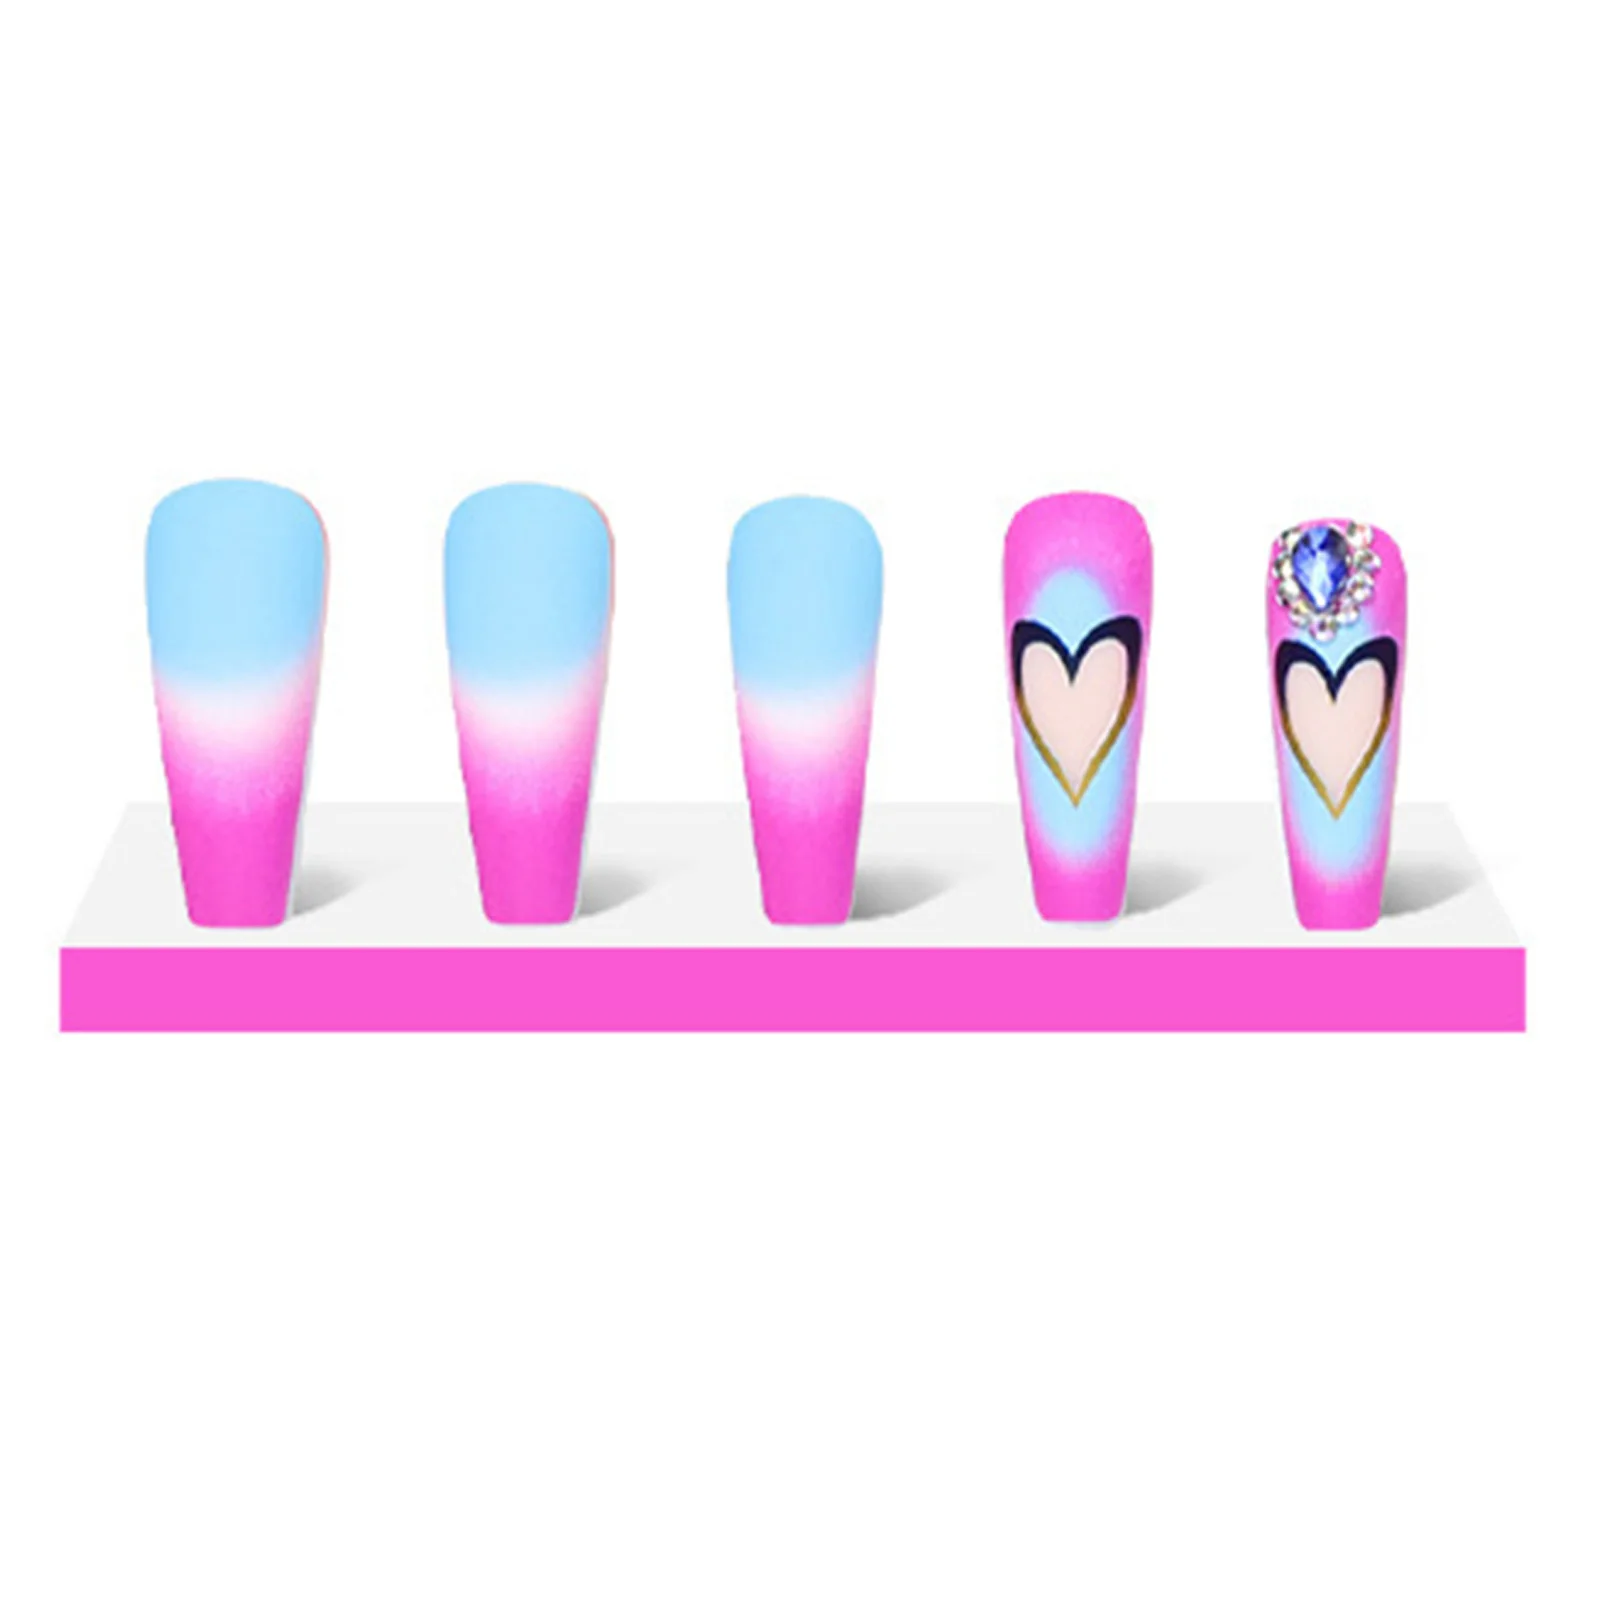 Декор с сердечками, красочные накладные ногти, долговечный безопасный материал, водонепроницаемые накладные ногти для украшения ногтей своими руками 4